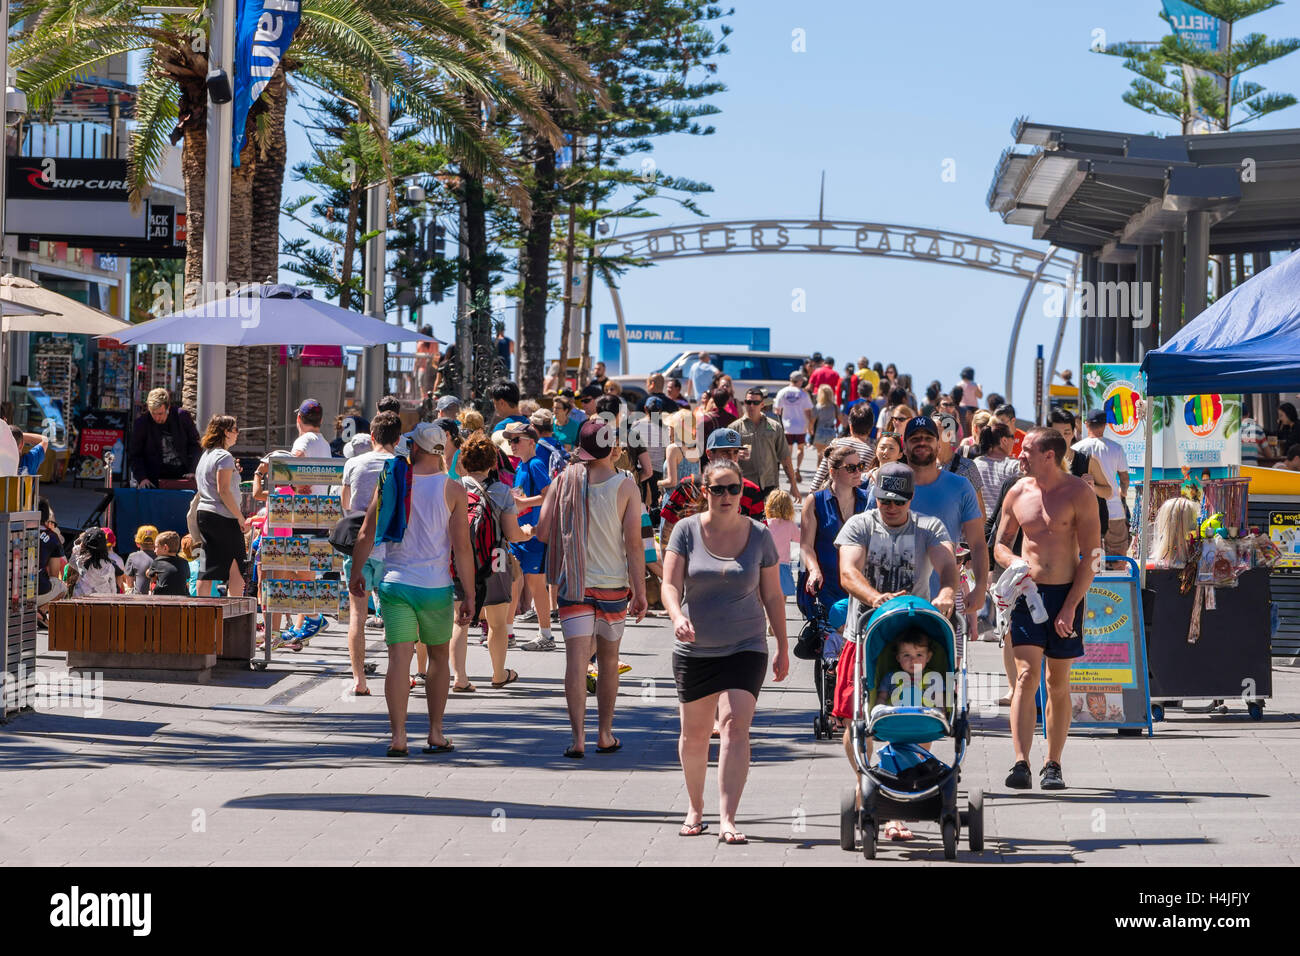 Tourists in Cavill Avenue in Gold Coast, Australia Stock Photo